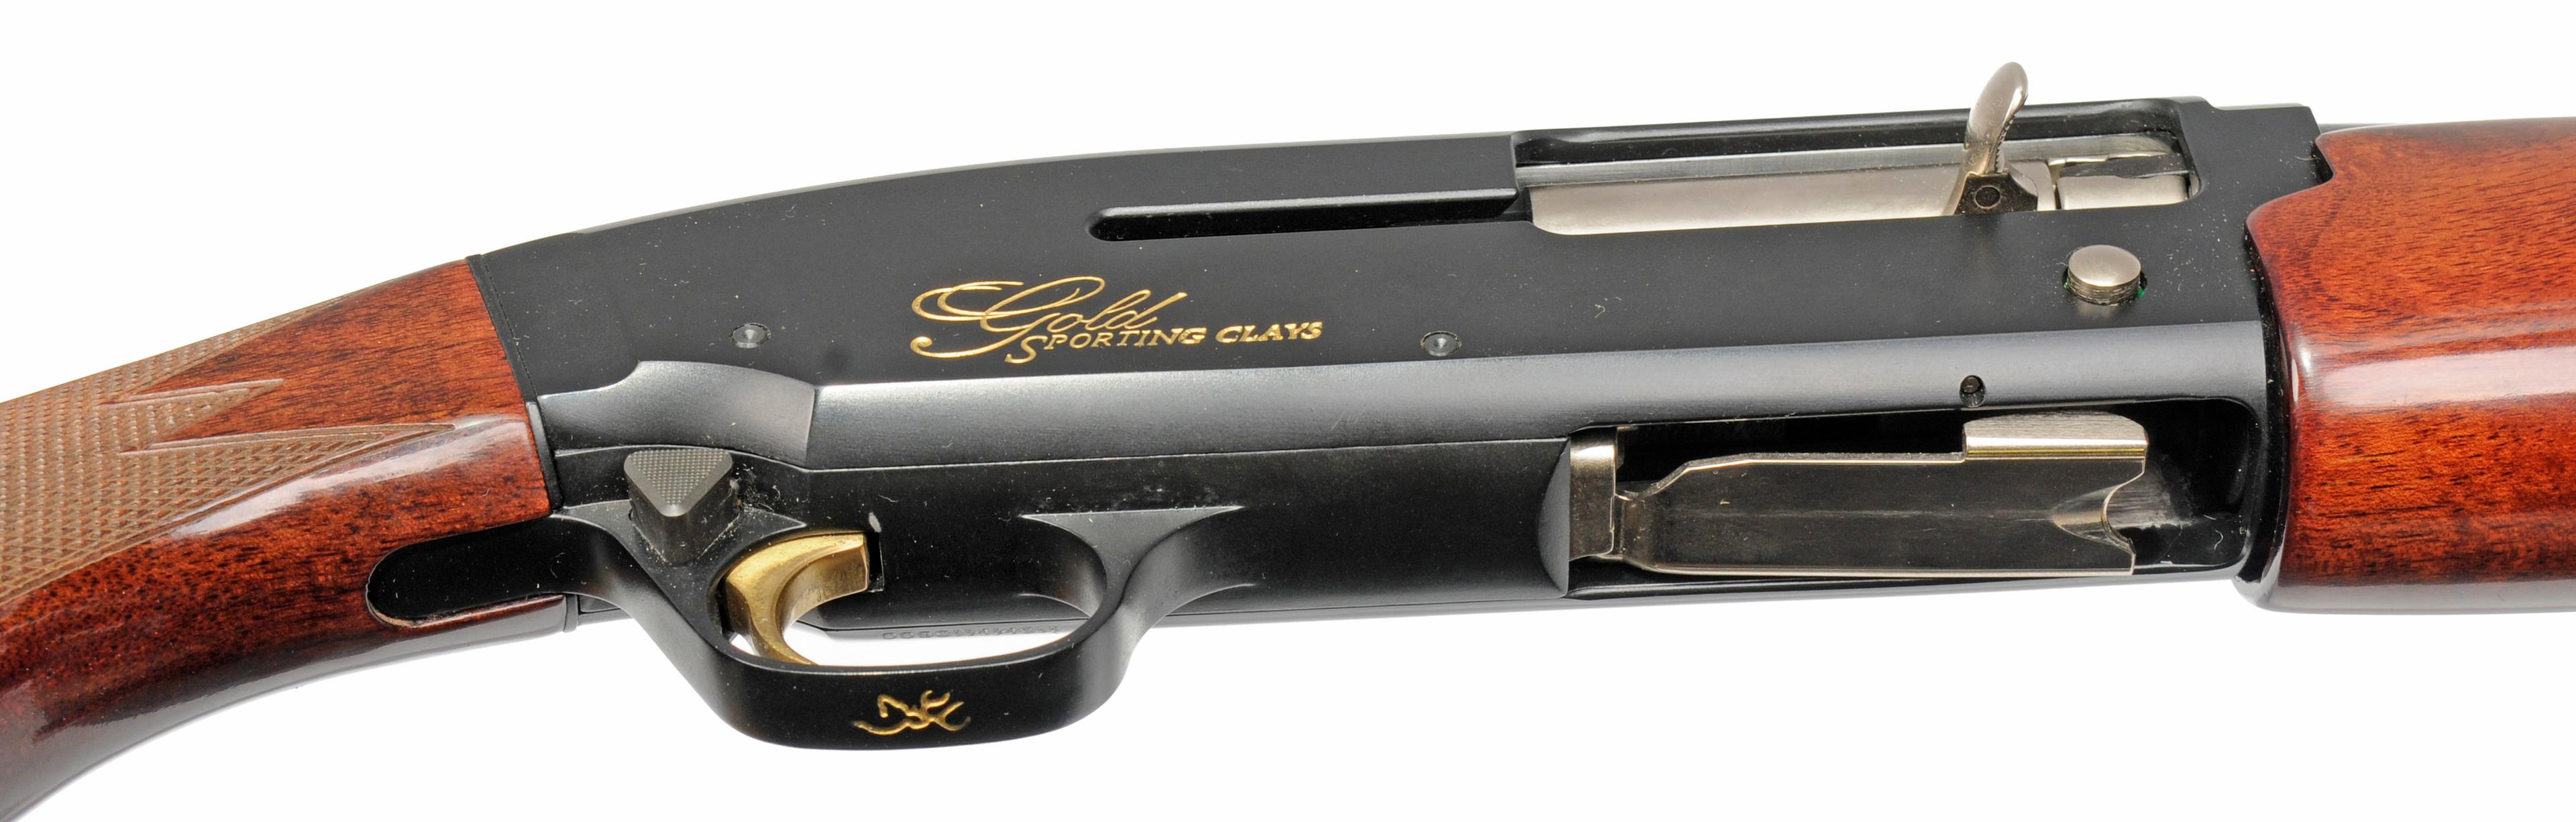 Nice Browning Gold 12 Ga Sporting Clays Semi-Automatic Shotgun - FFL # 113MM13800 (JMB1)